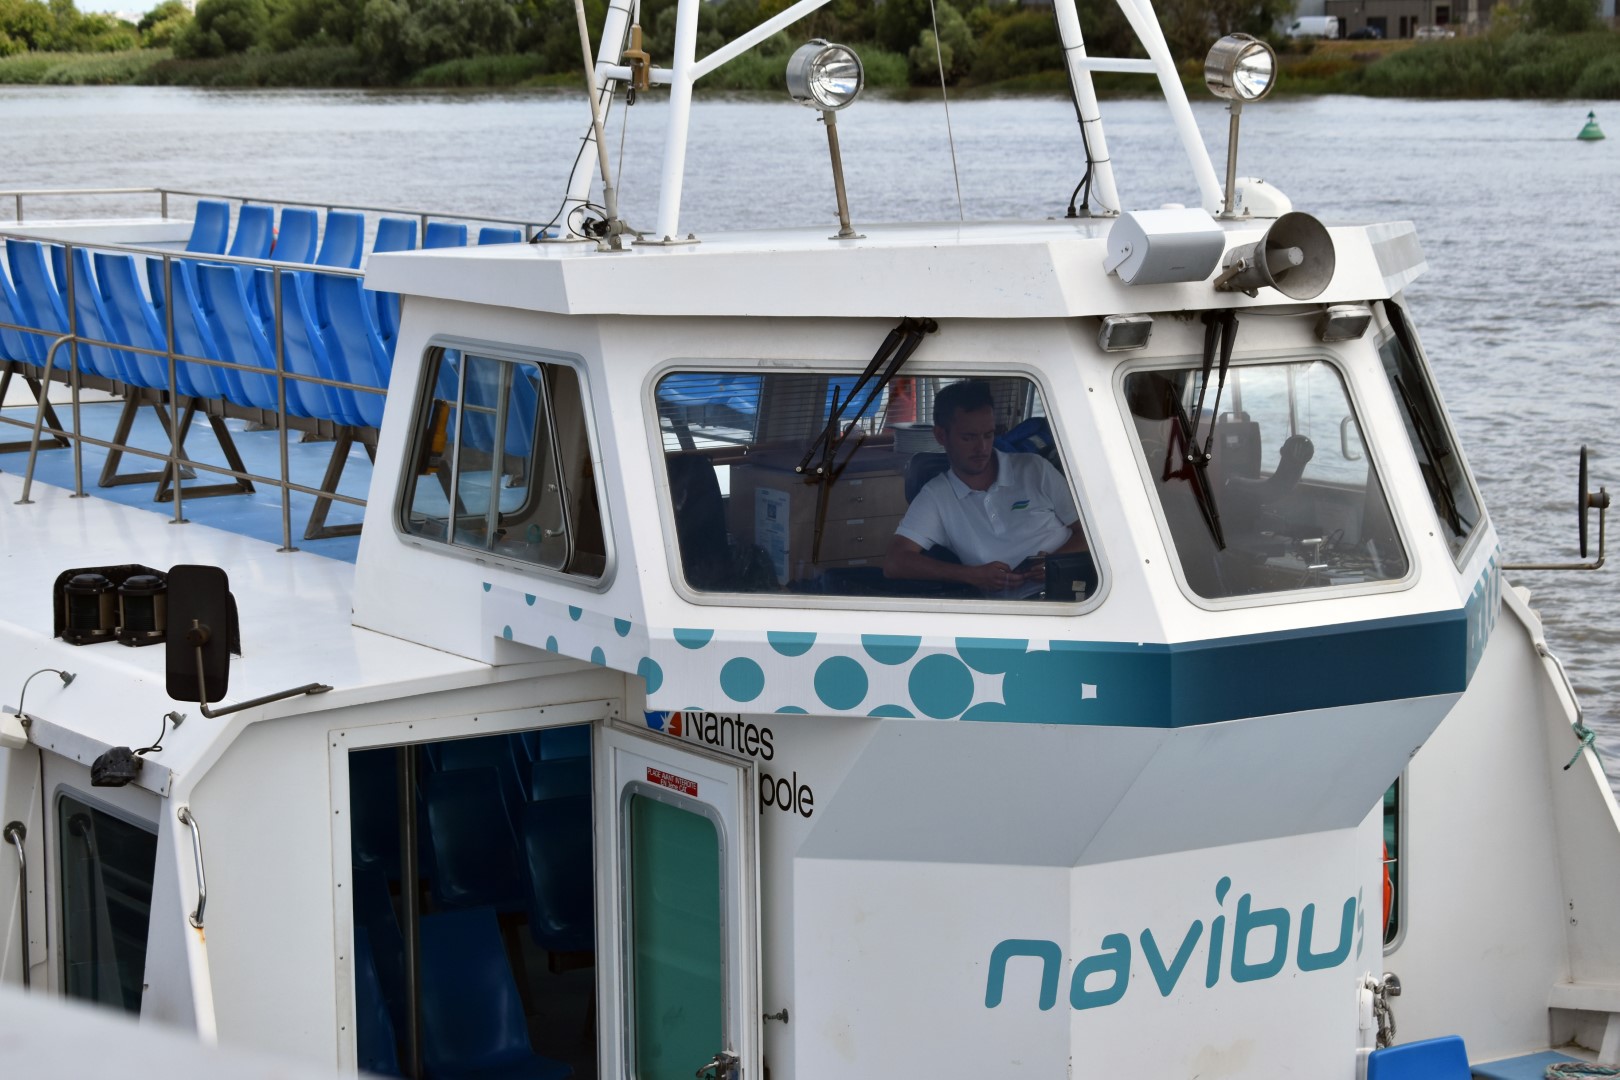 Navibus, Île de Nantes, July 2022